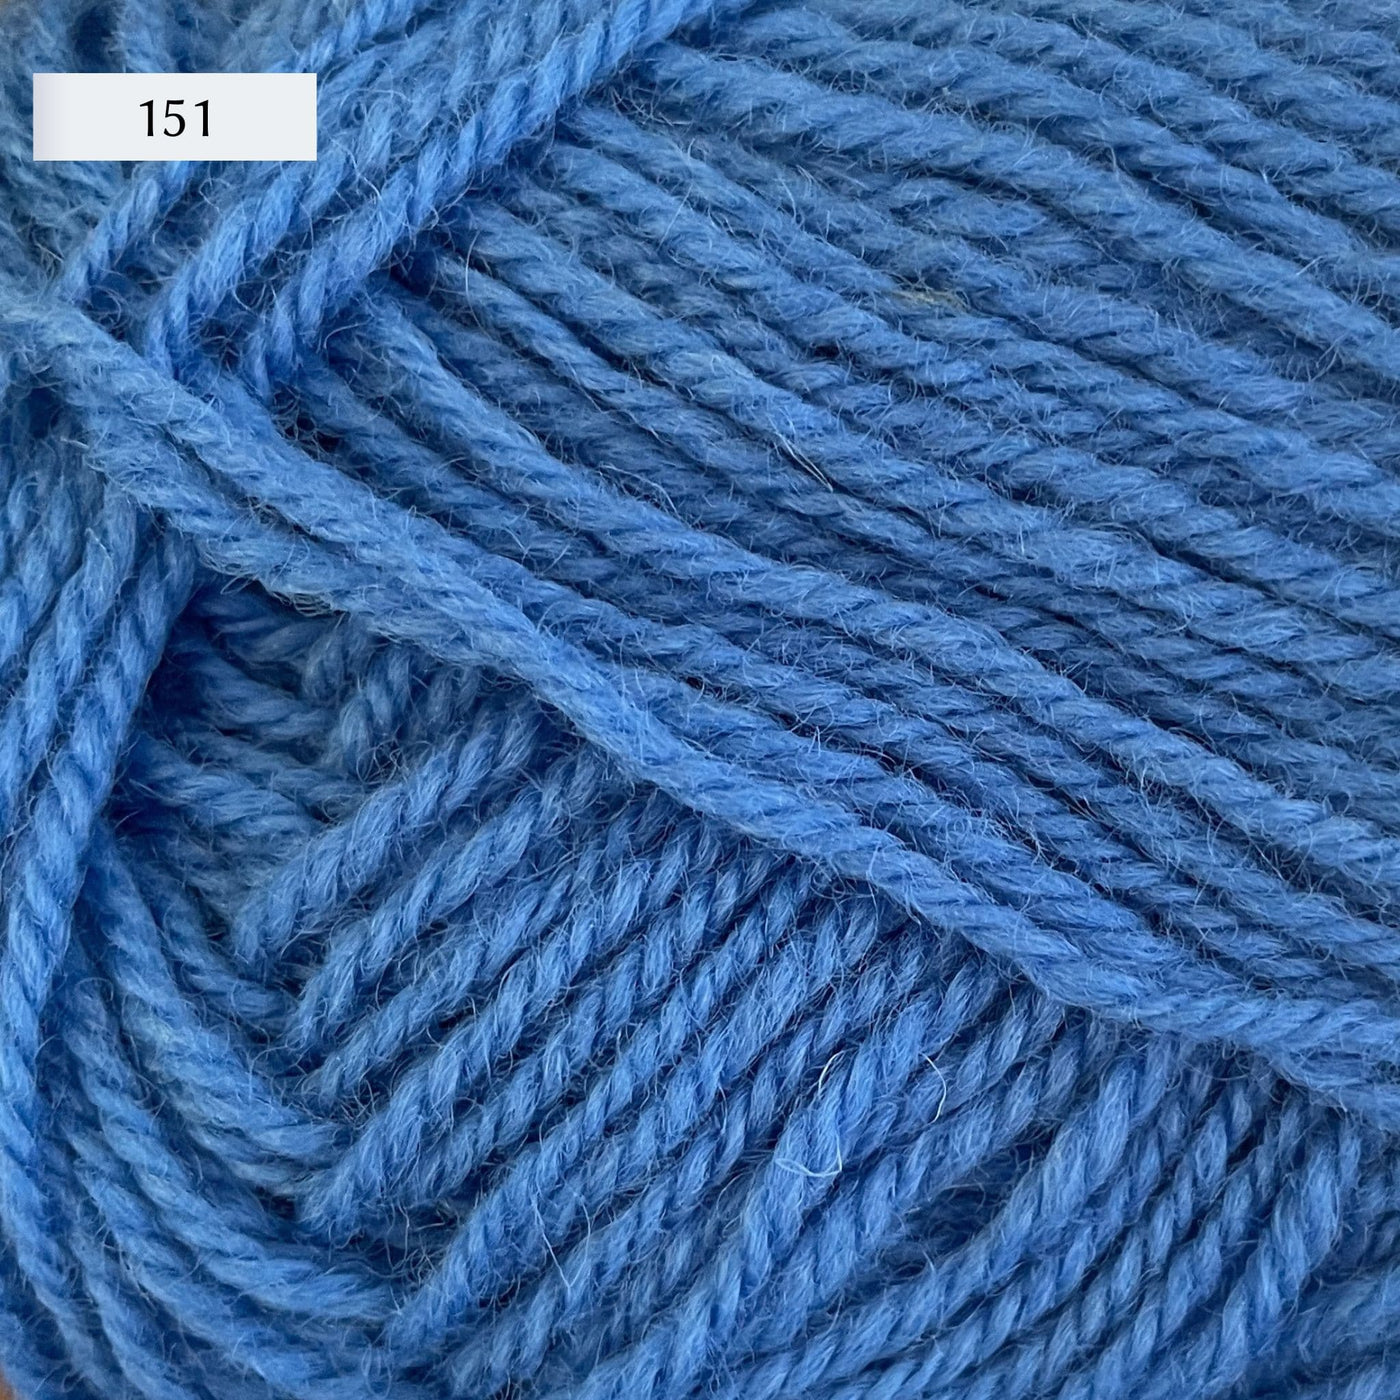 Rauma Strikkegarn, DK weight yarn, in color 151, light cornflower blue